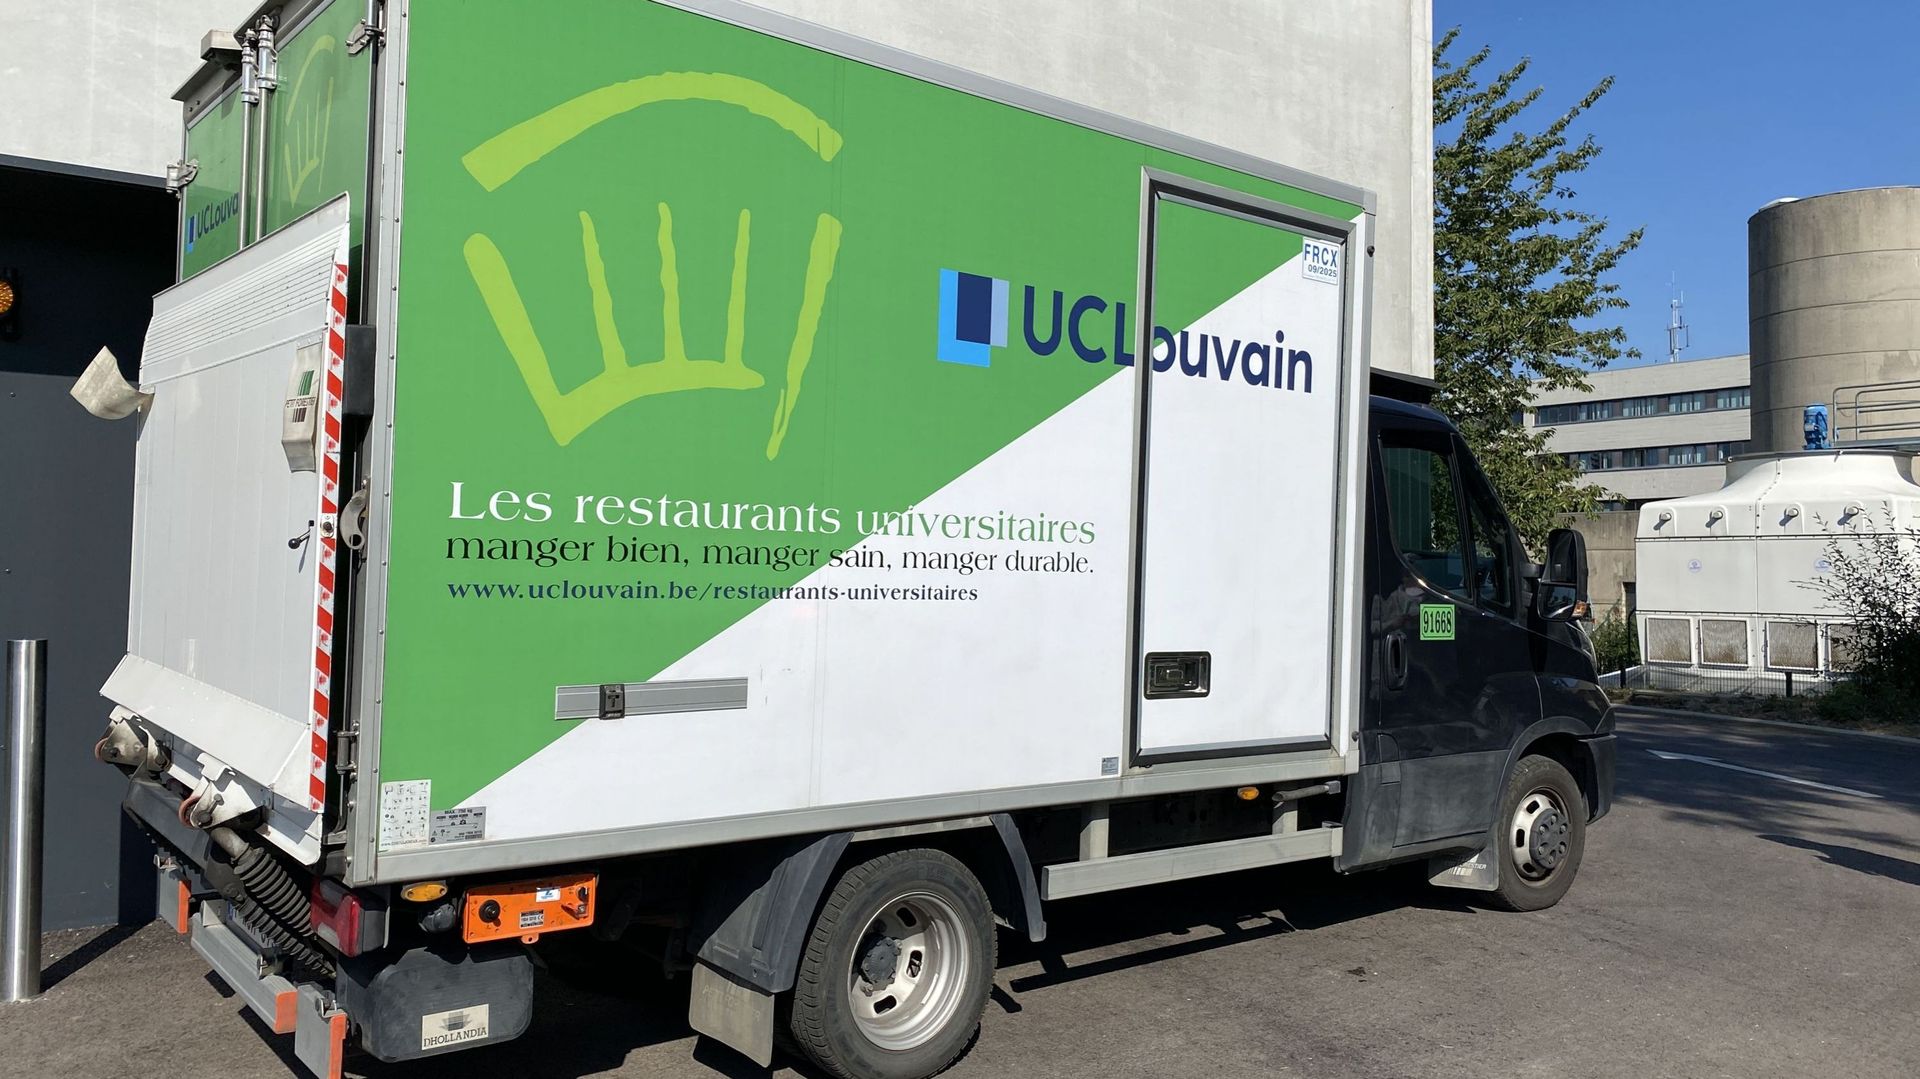 L'UCLouvain dispose également de ses propres véhicules pour le transport et la livraison.